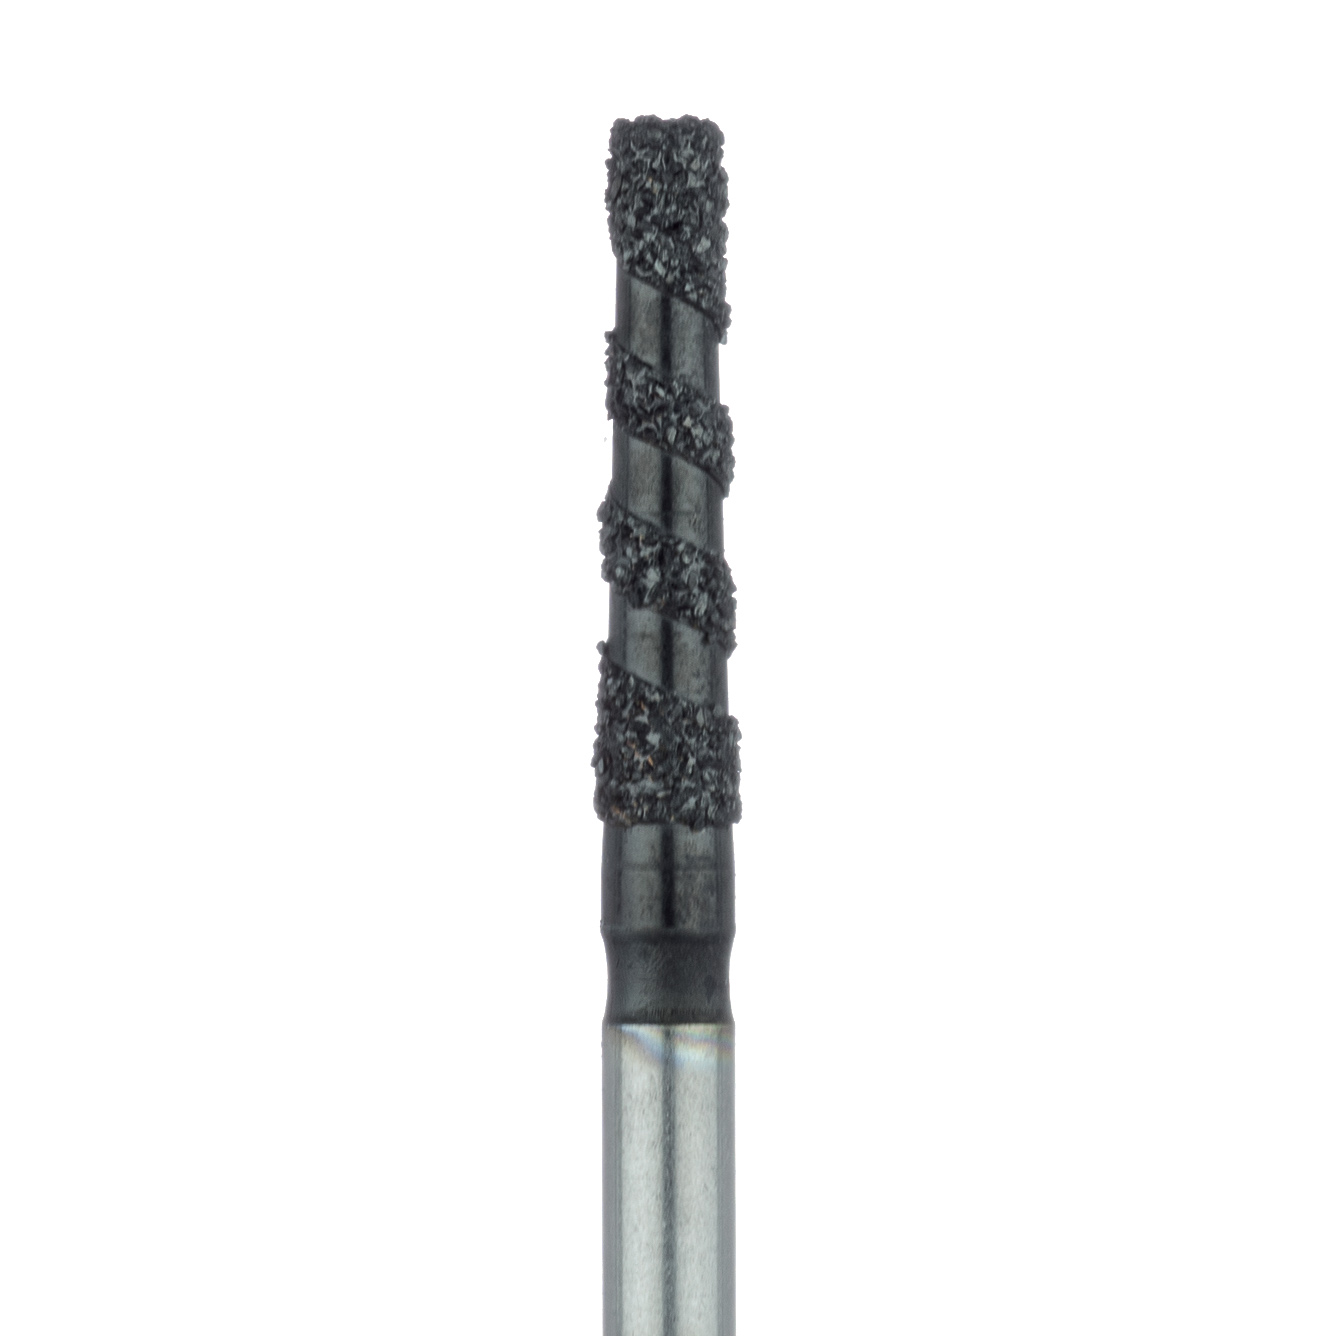 B847-018-FG Black Cobra Diamond Bur, Flat End Taper, 1.8mm Ø, Super Coarse, FG